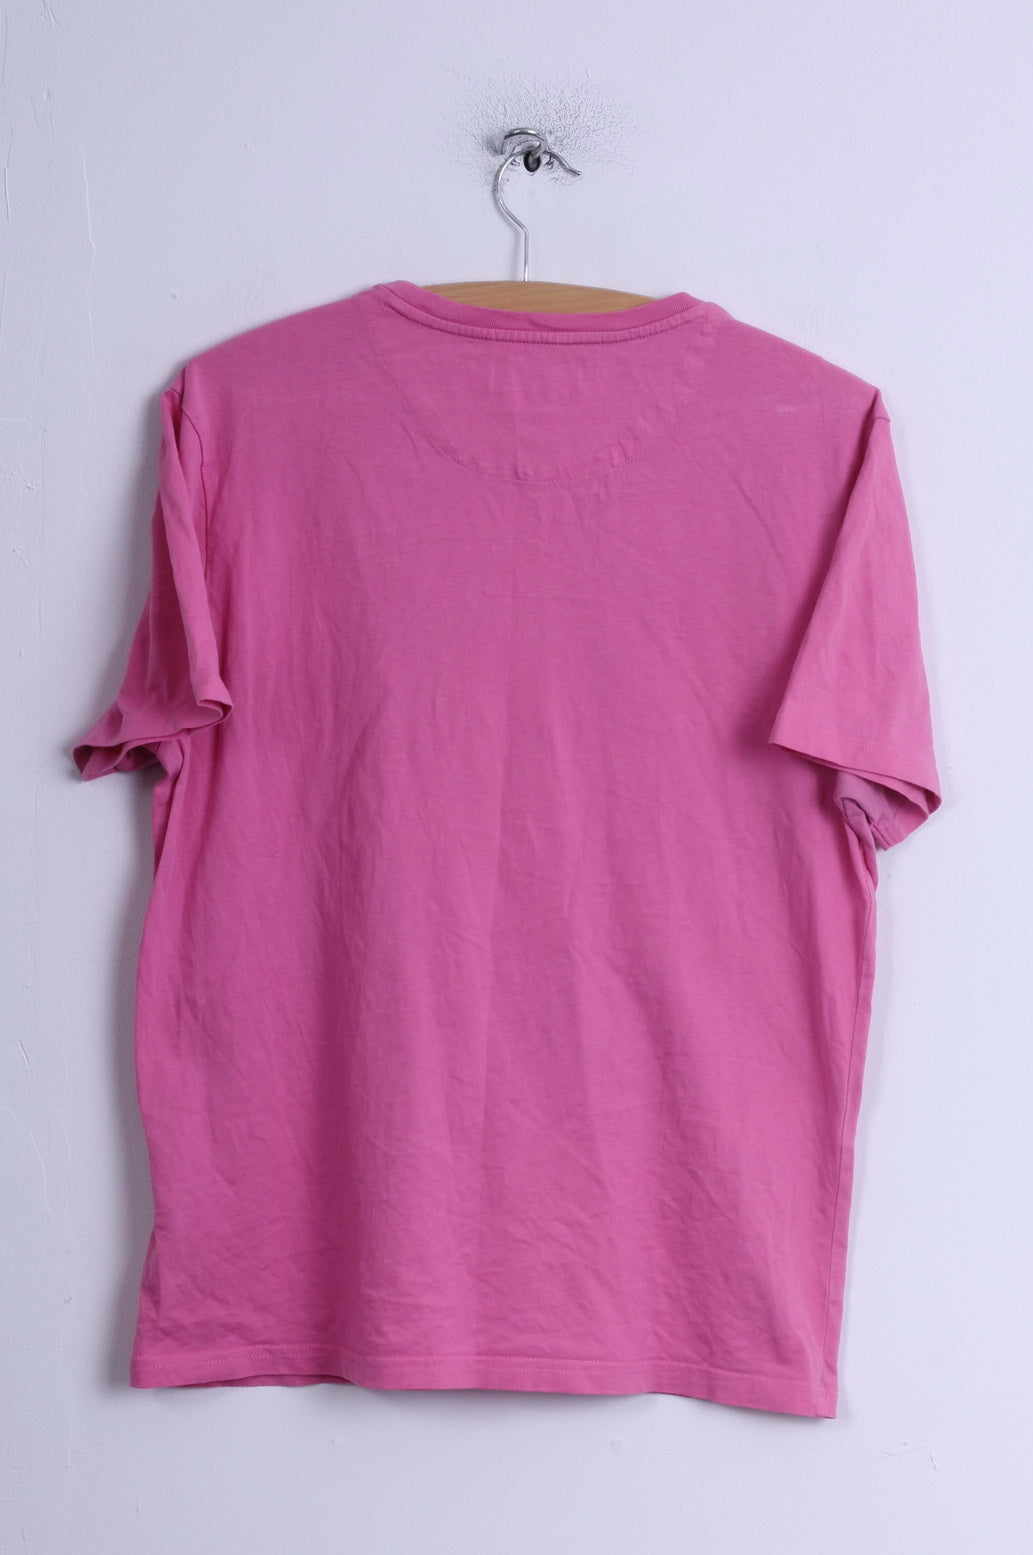 Lyle & Scott Womens L T- Shirt Pink Cotton Crew Neck Casual Plain Top